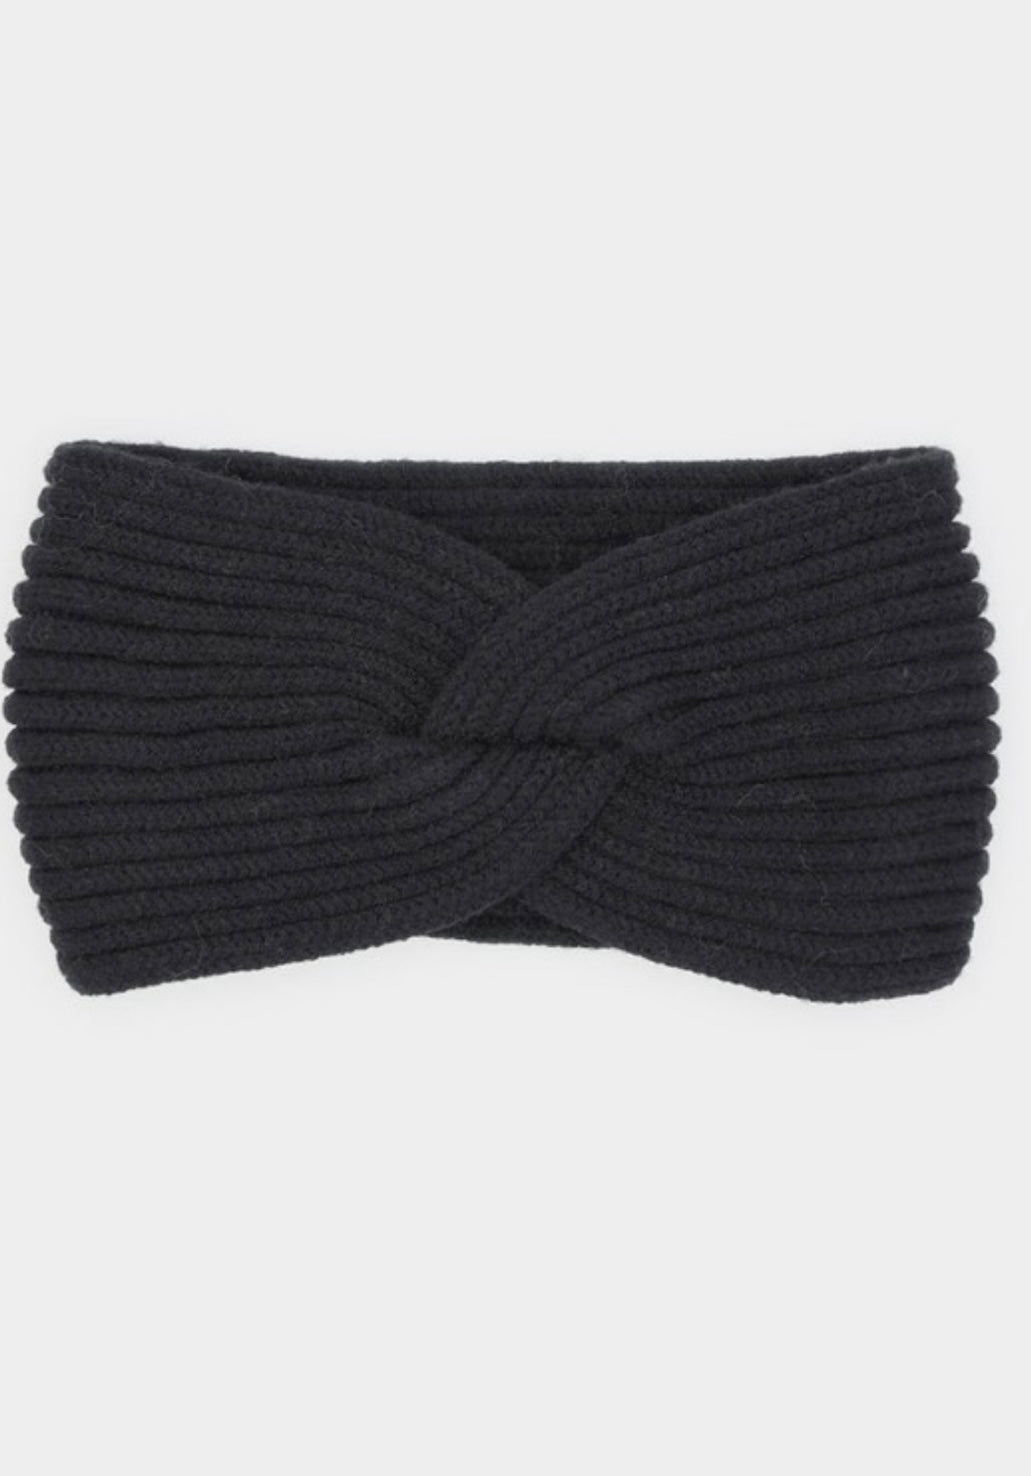 Knit Twist Winter Headband